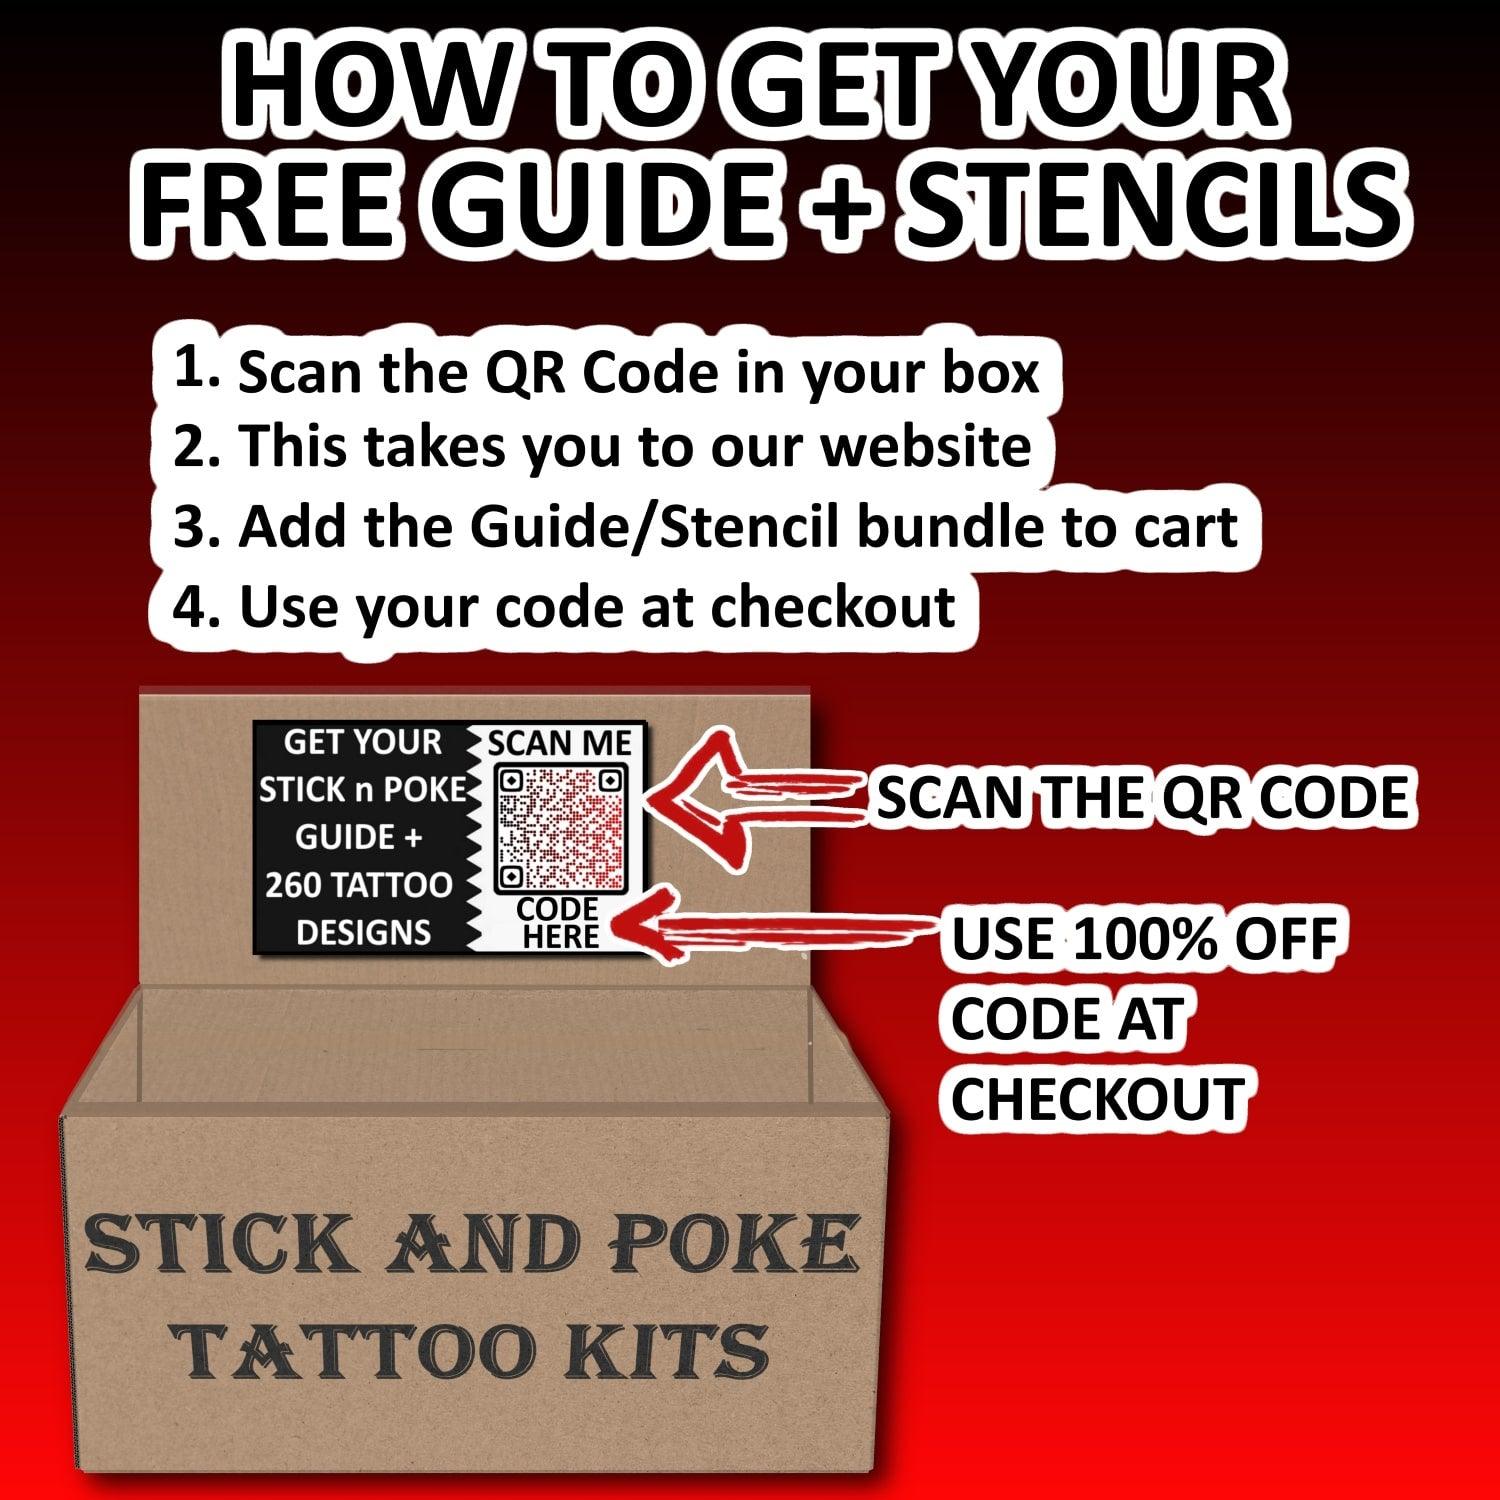 Stick and Poke COMBO Tattoo Kit - LARGE Box of 124 Hand Poke Tattooing Supplies - SINGLE NEEDLE